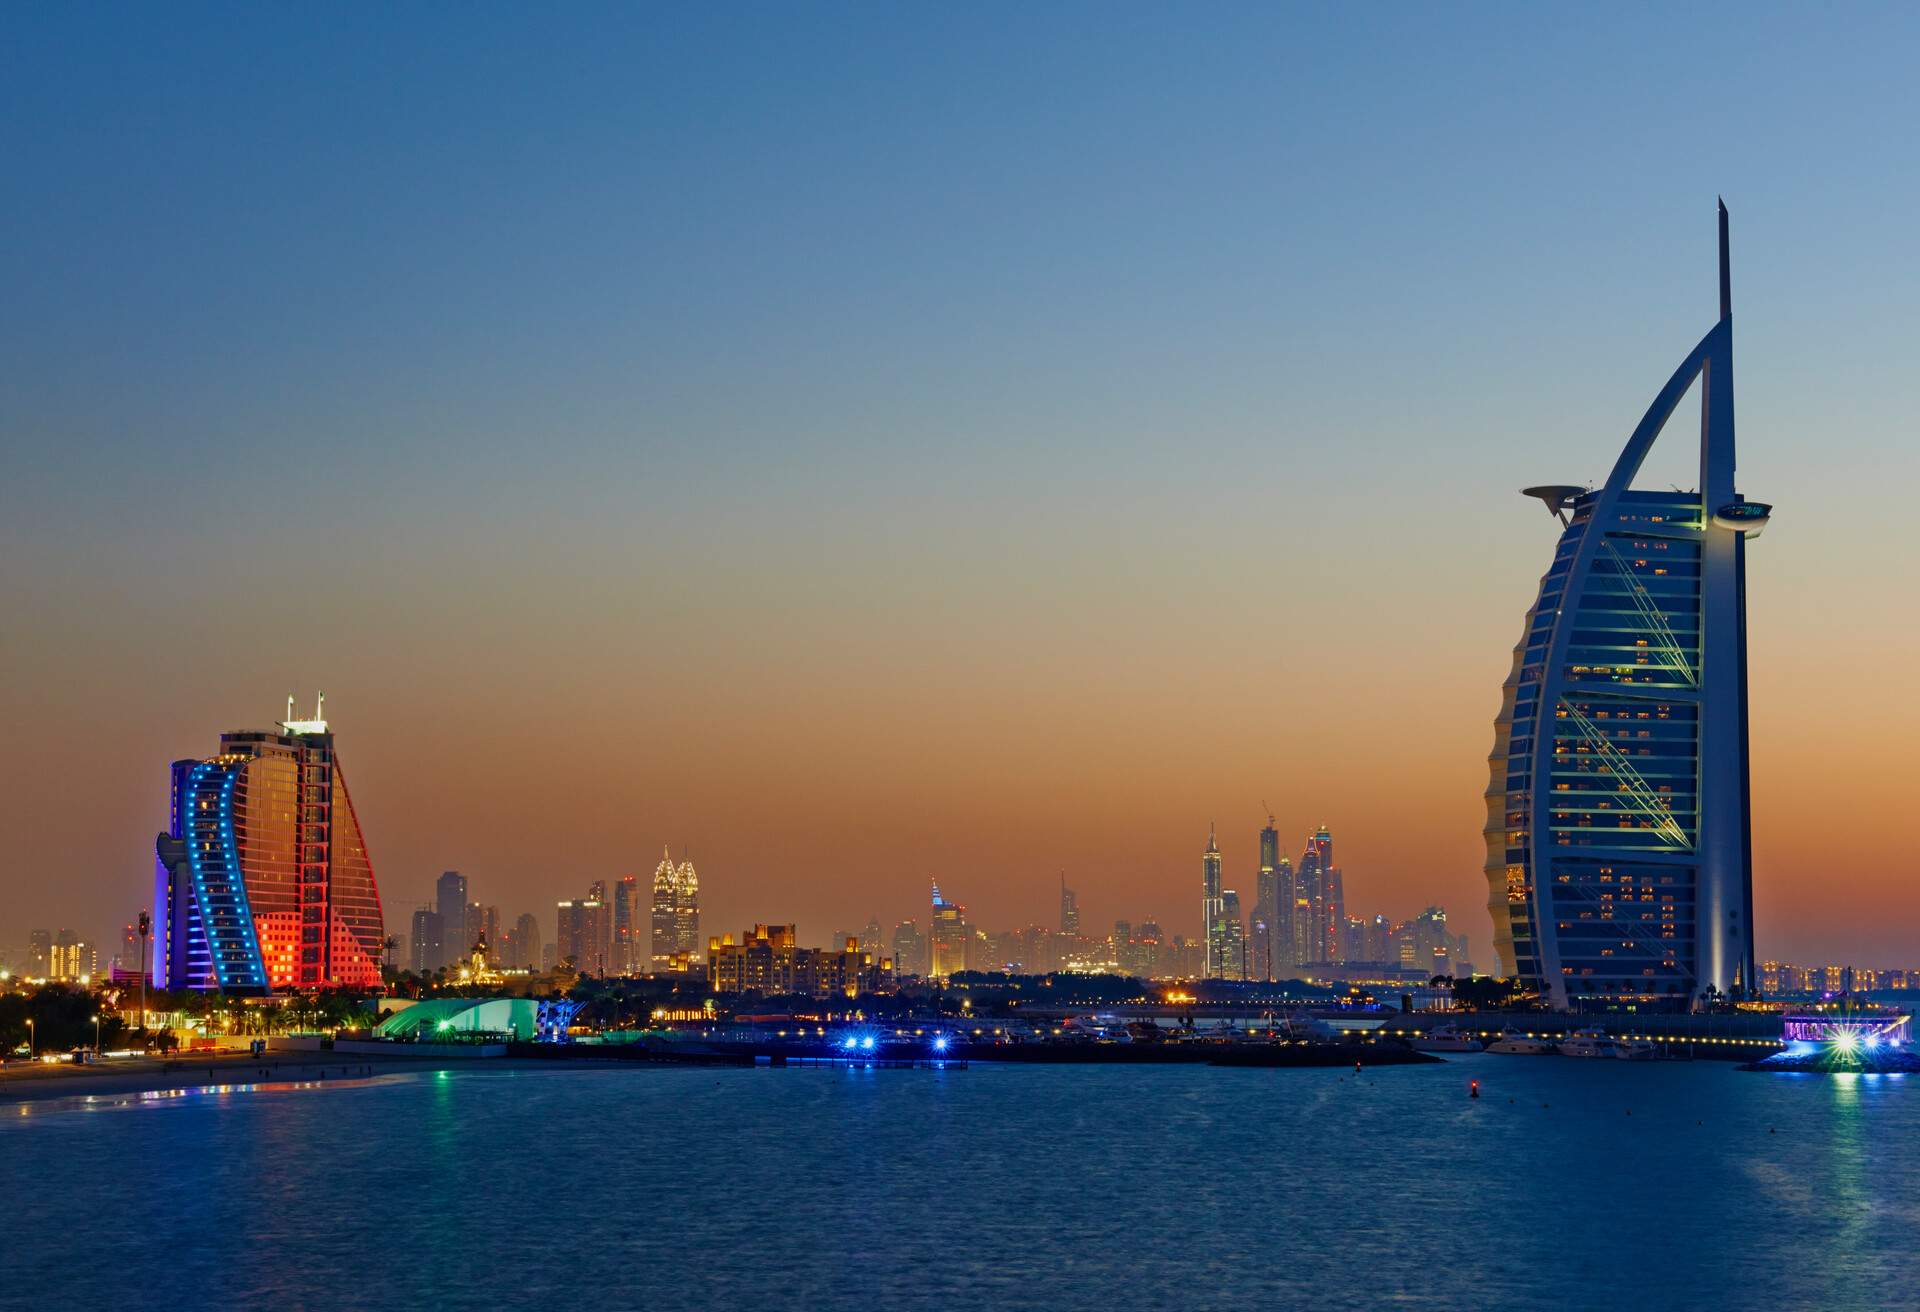 Emirats Arabes Unis, Dubai, Jumeirah beach hotel et hotel Burj Al Arab // United Arab Emirates, Dubai, Jumeira beach hotel and Burj Al Arab hotel